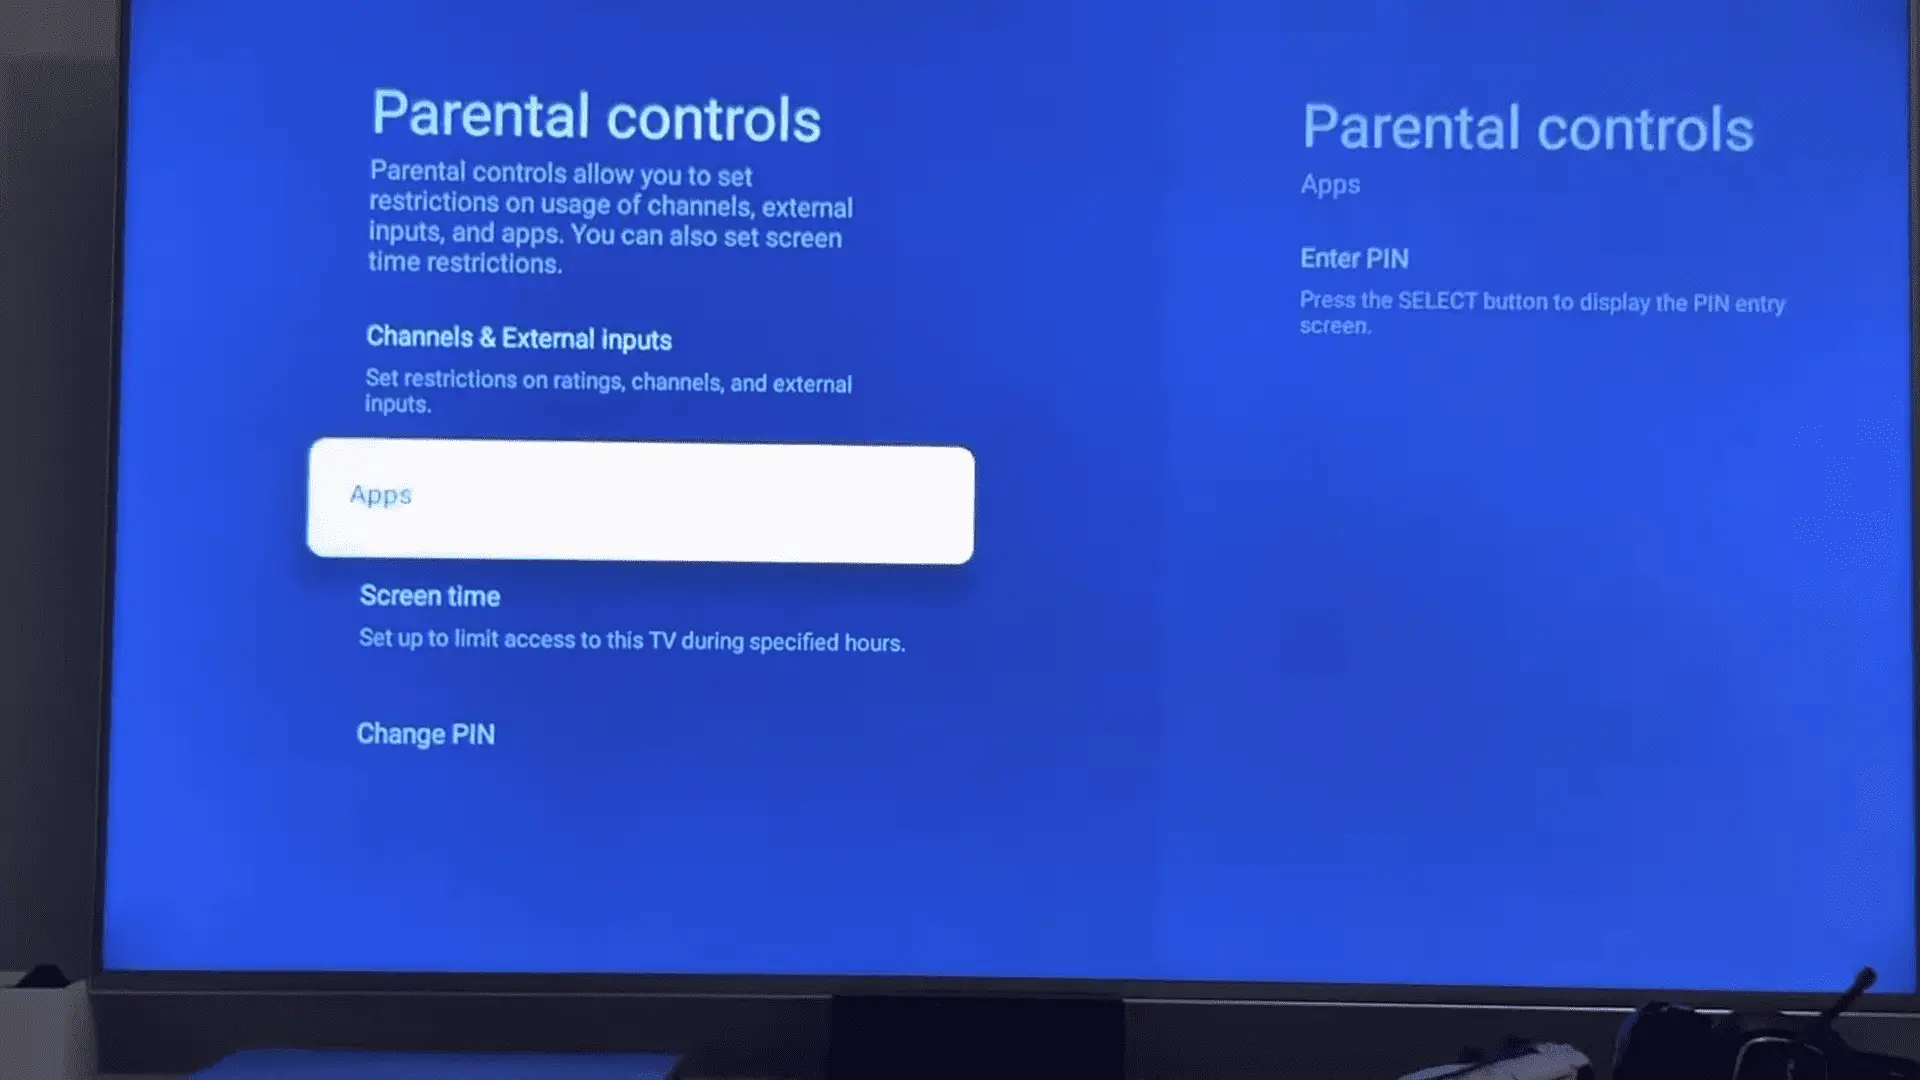 Understanding the parental controls